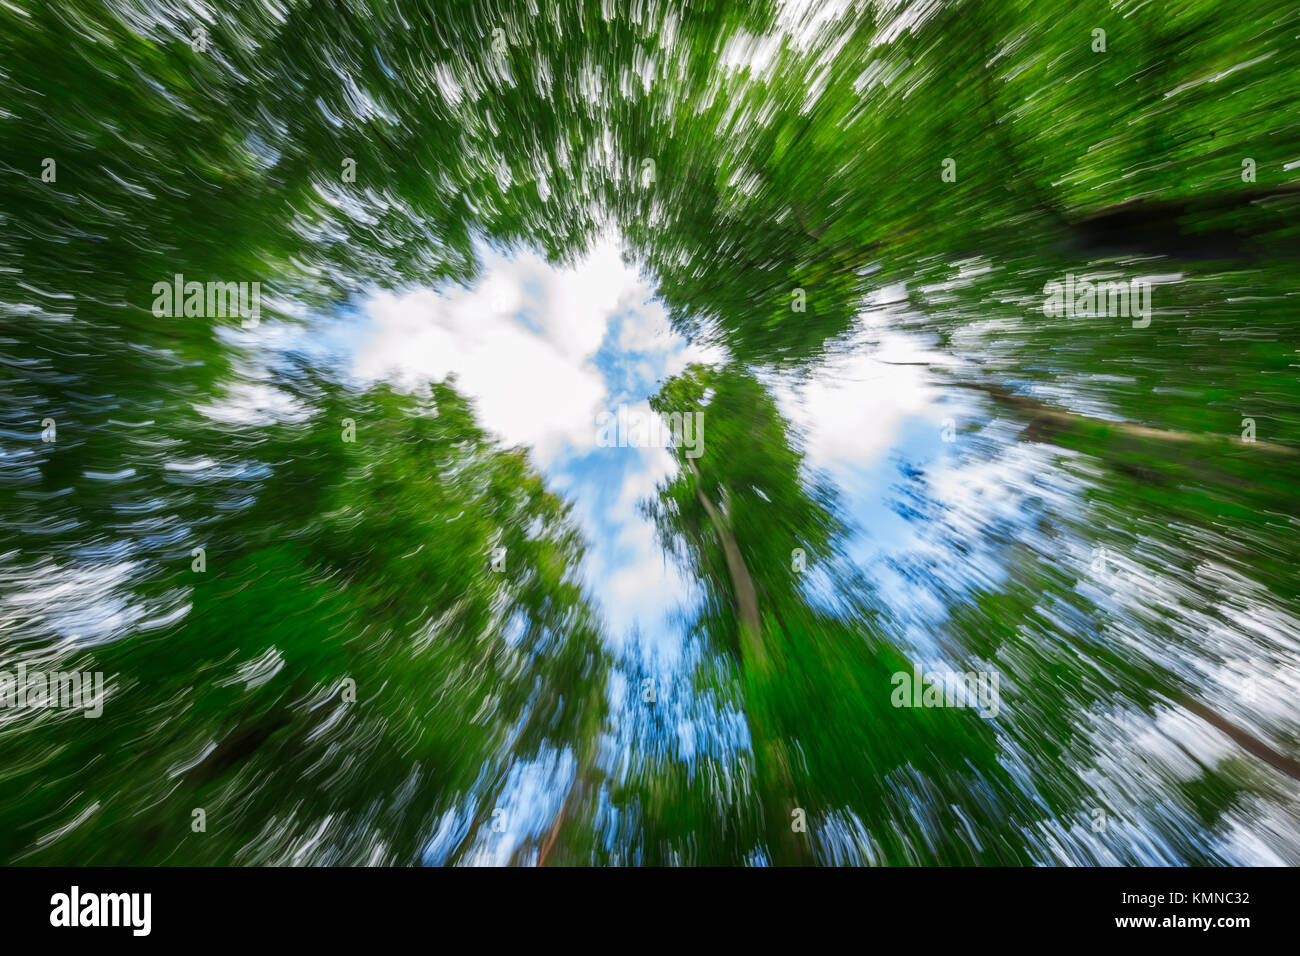 Lange Belichtung von unten nach oben in den Baumkronen vor blauer Himmel mit weißen Wolken und Kamera - Brennweite gezeichnet. Stockfoto